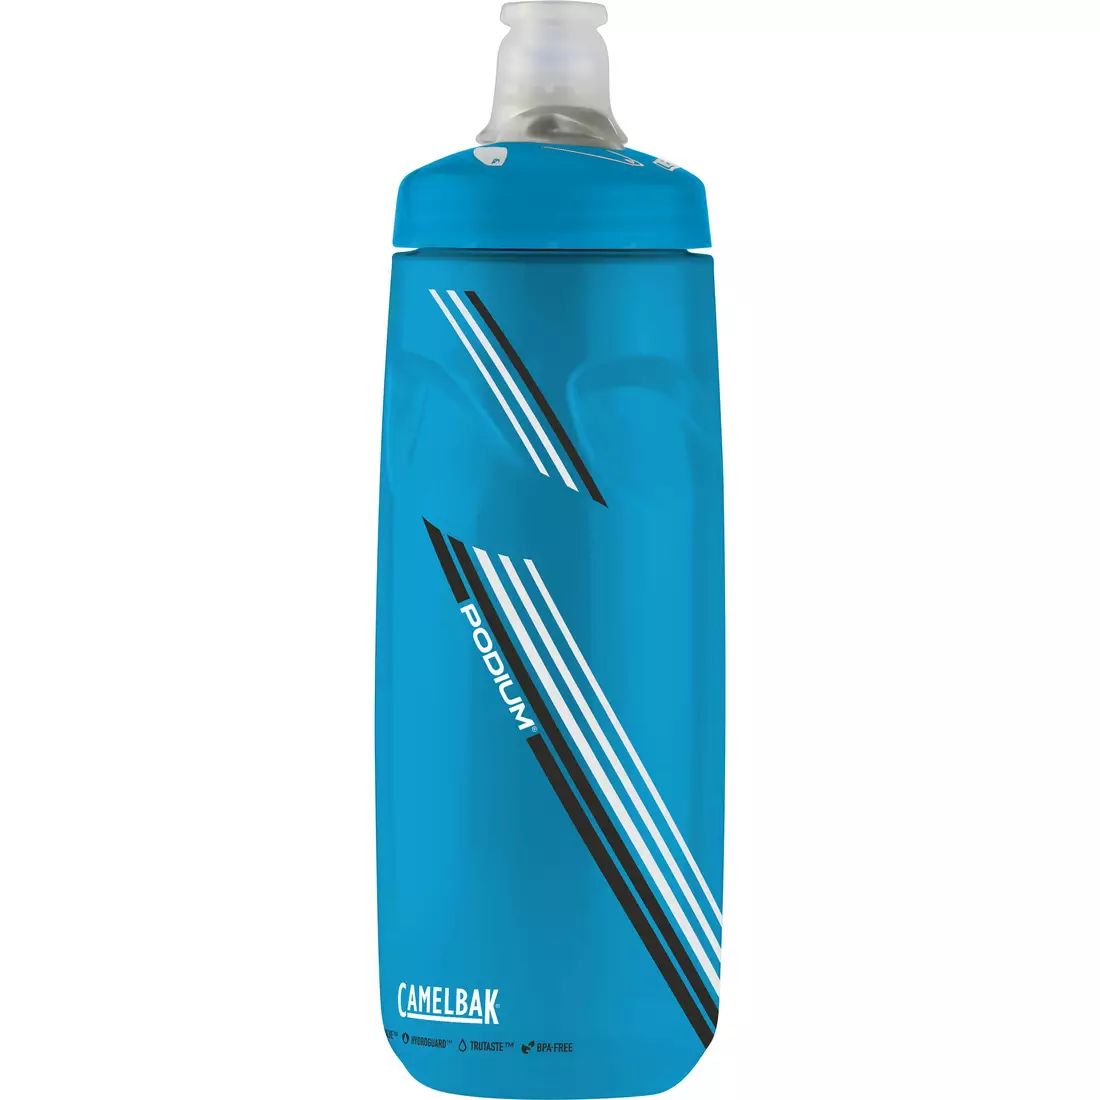 Camelbak SS17 Podium kerékpáros vizes palack 24oz/710 ml Breakaway Blue